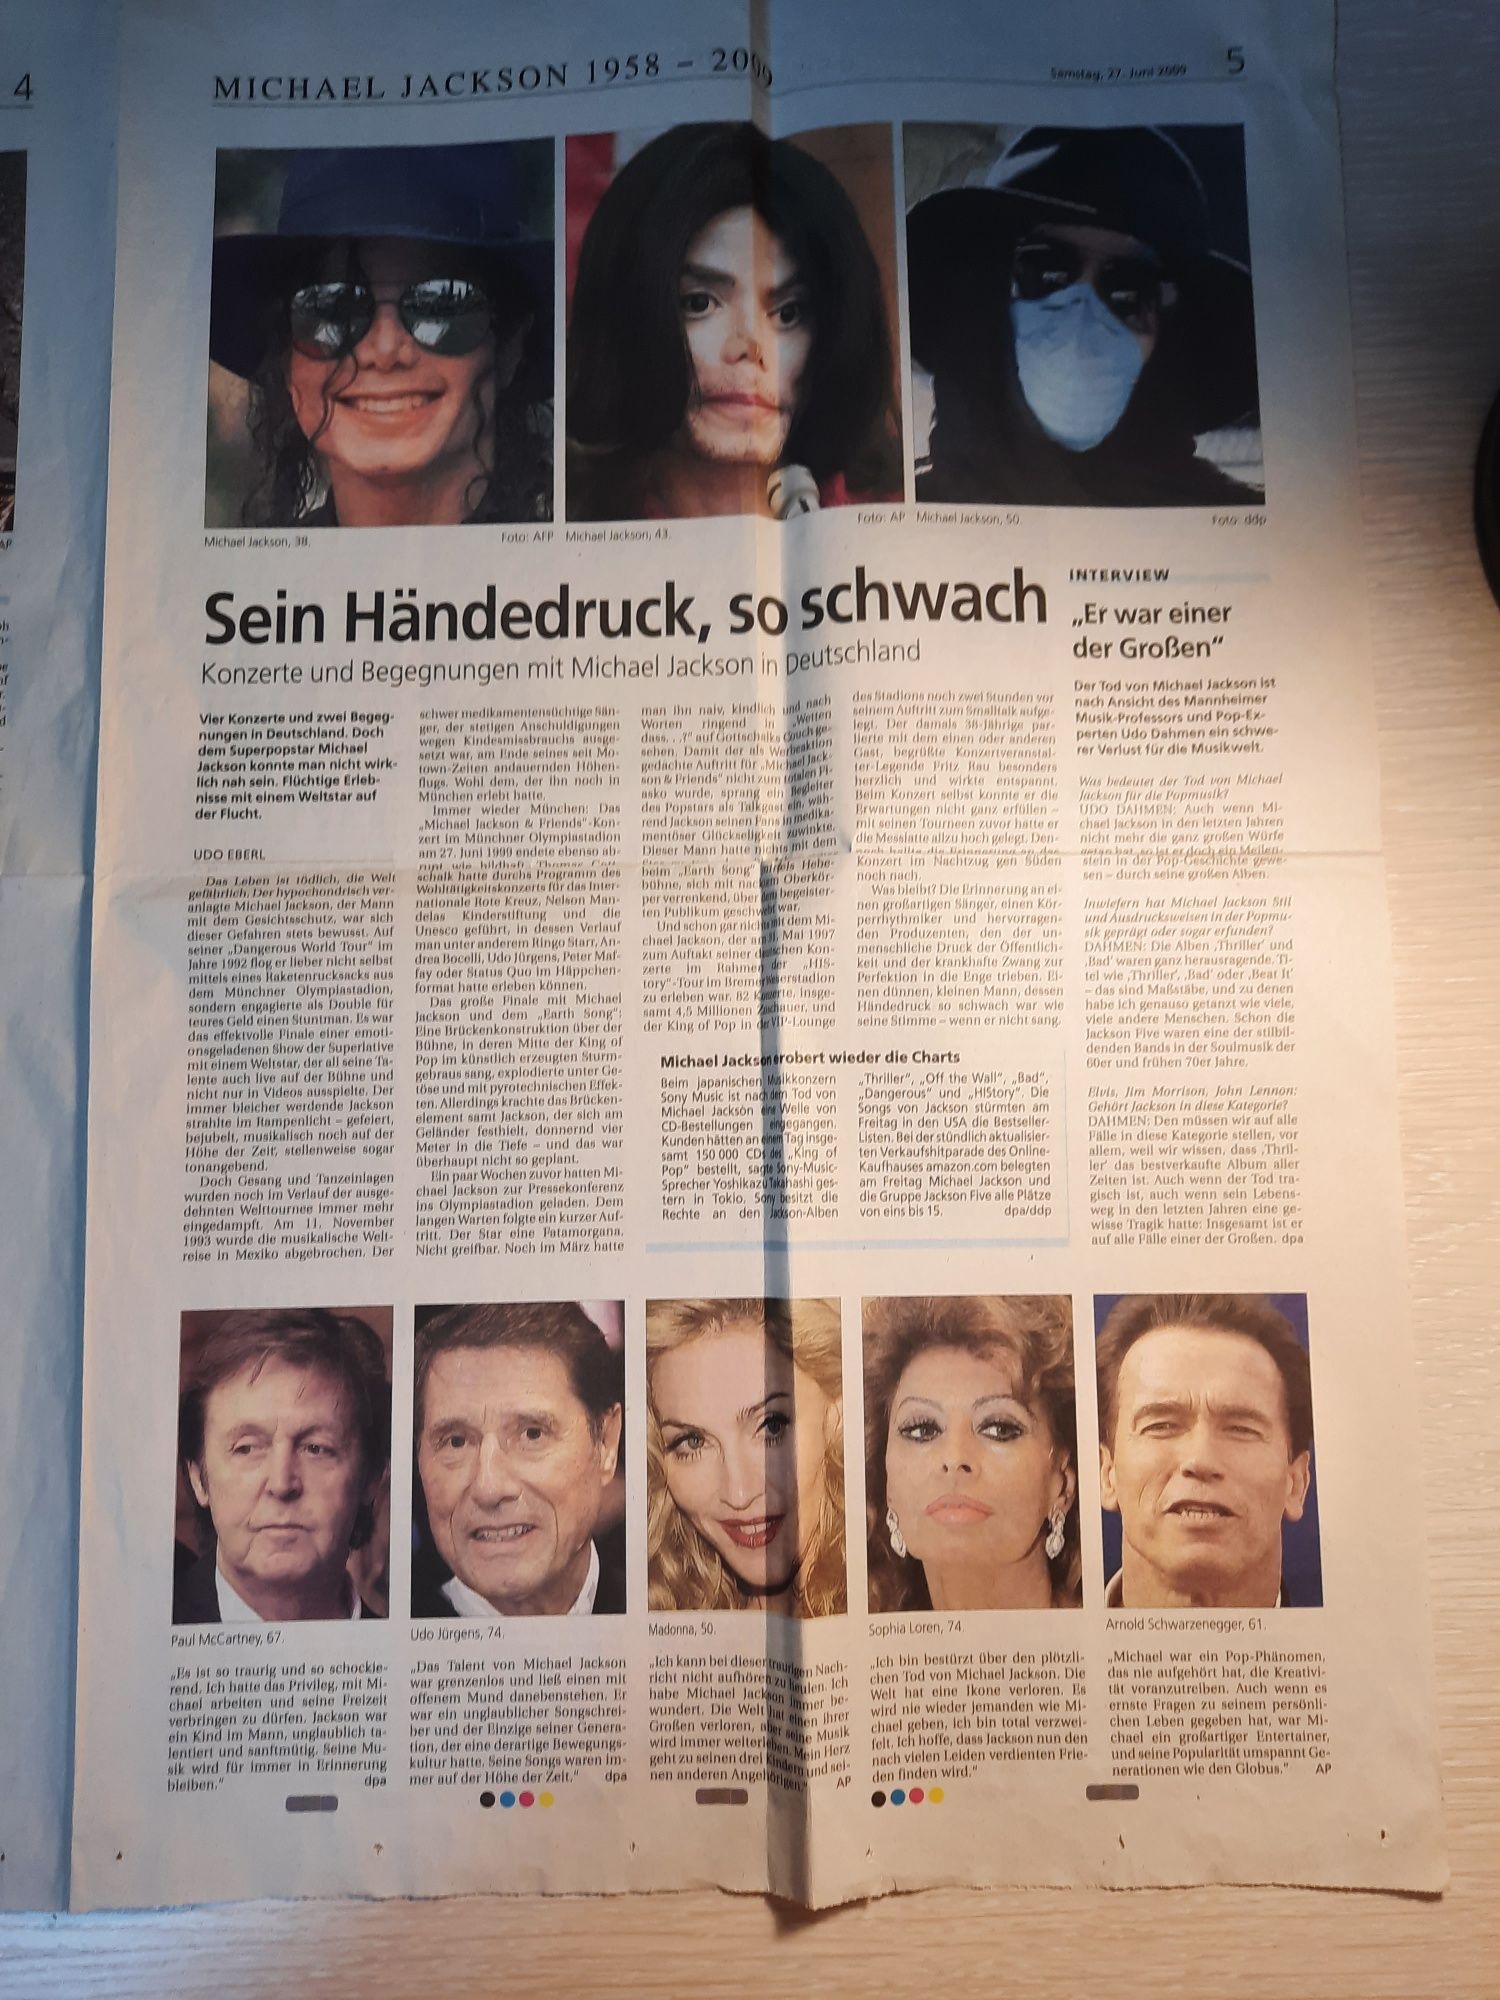 Разворот Германской газеты сообщ.о кончине Майкла Джексона 2009г.